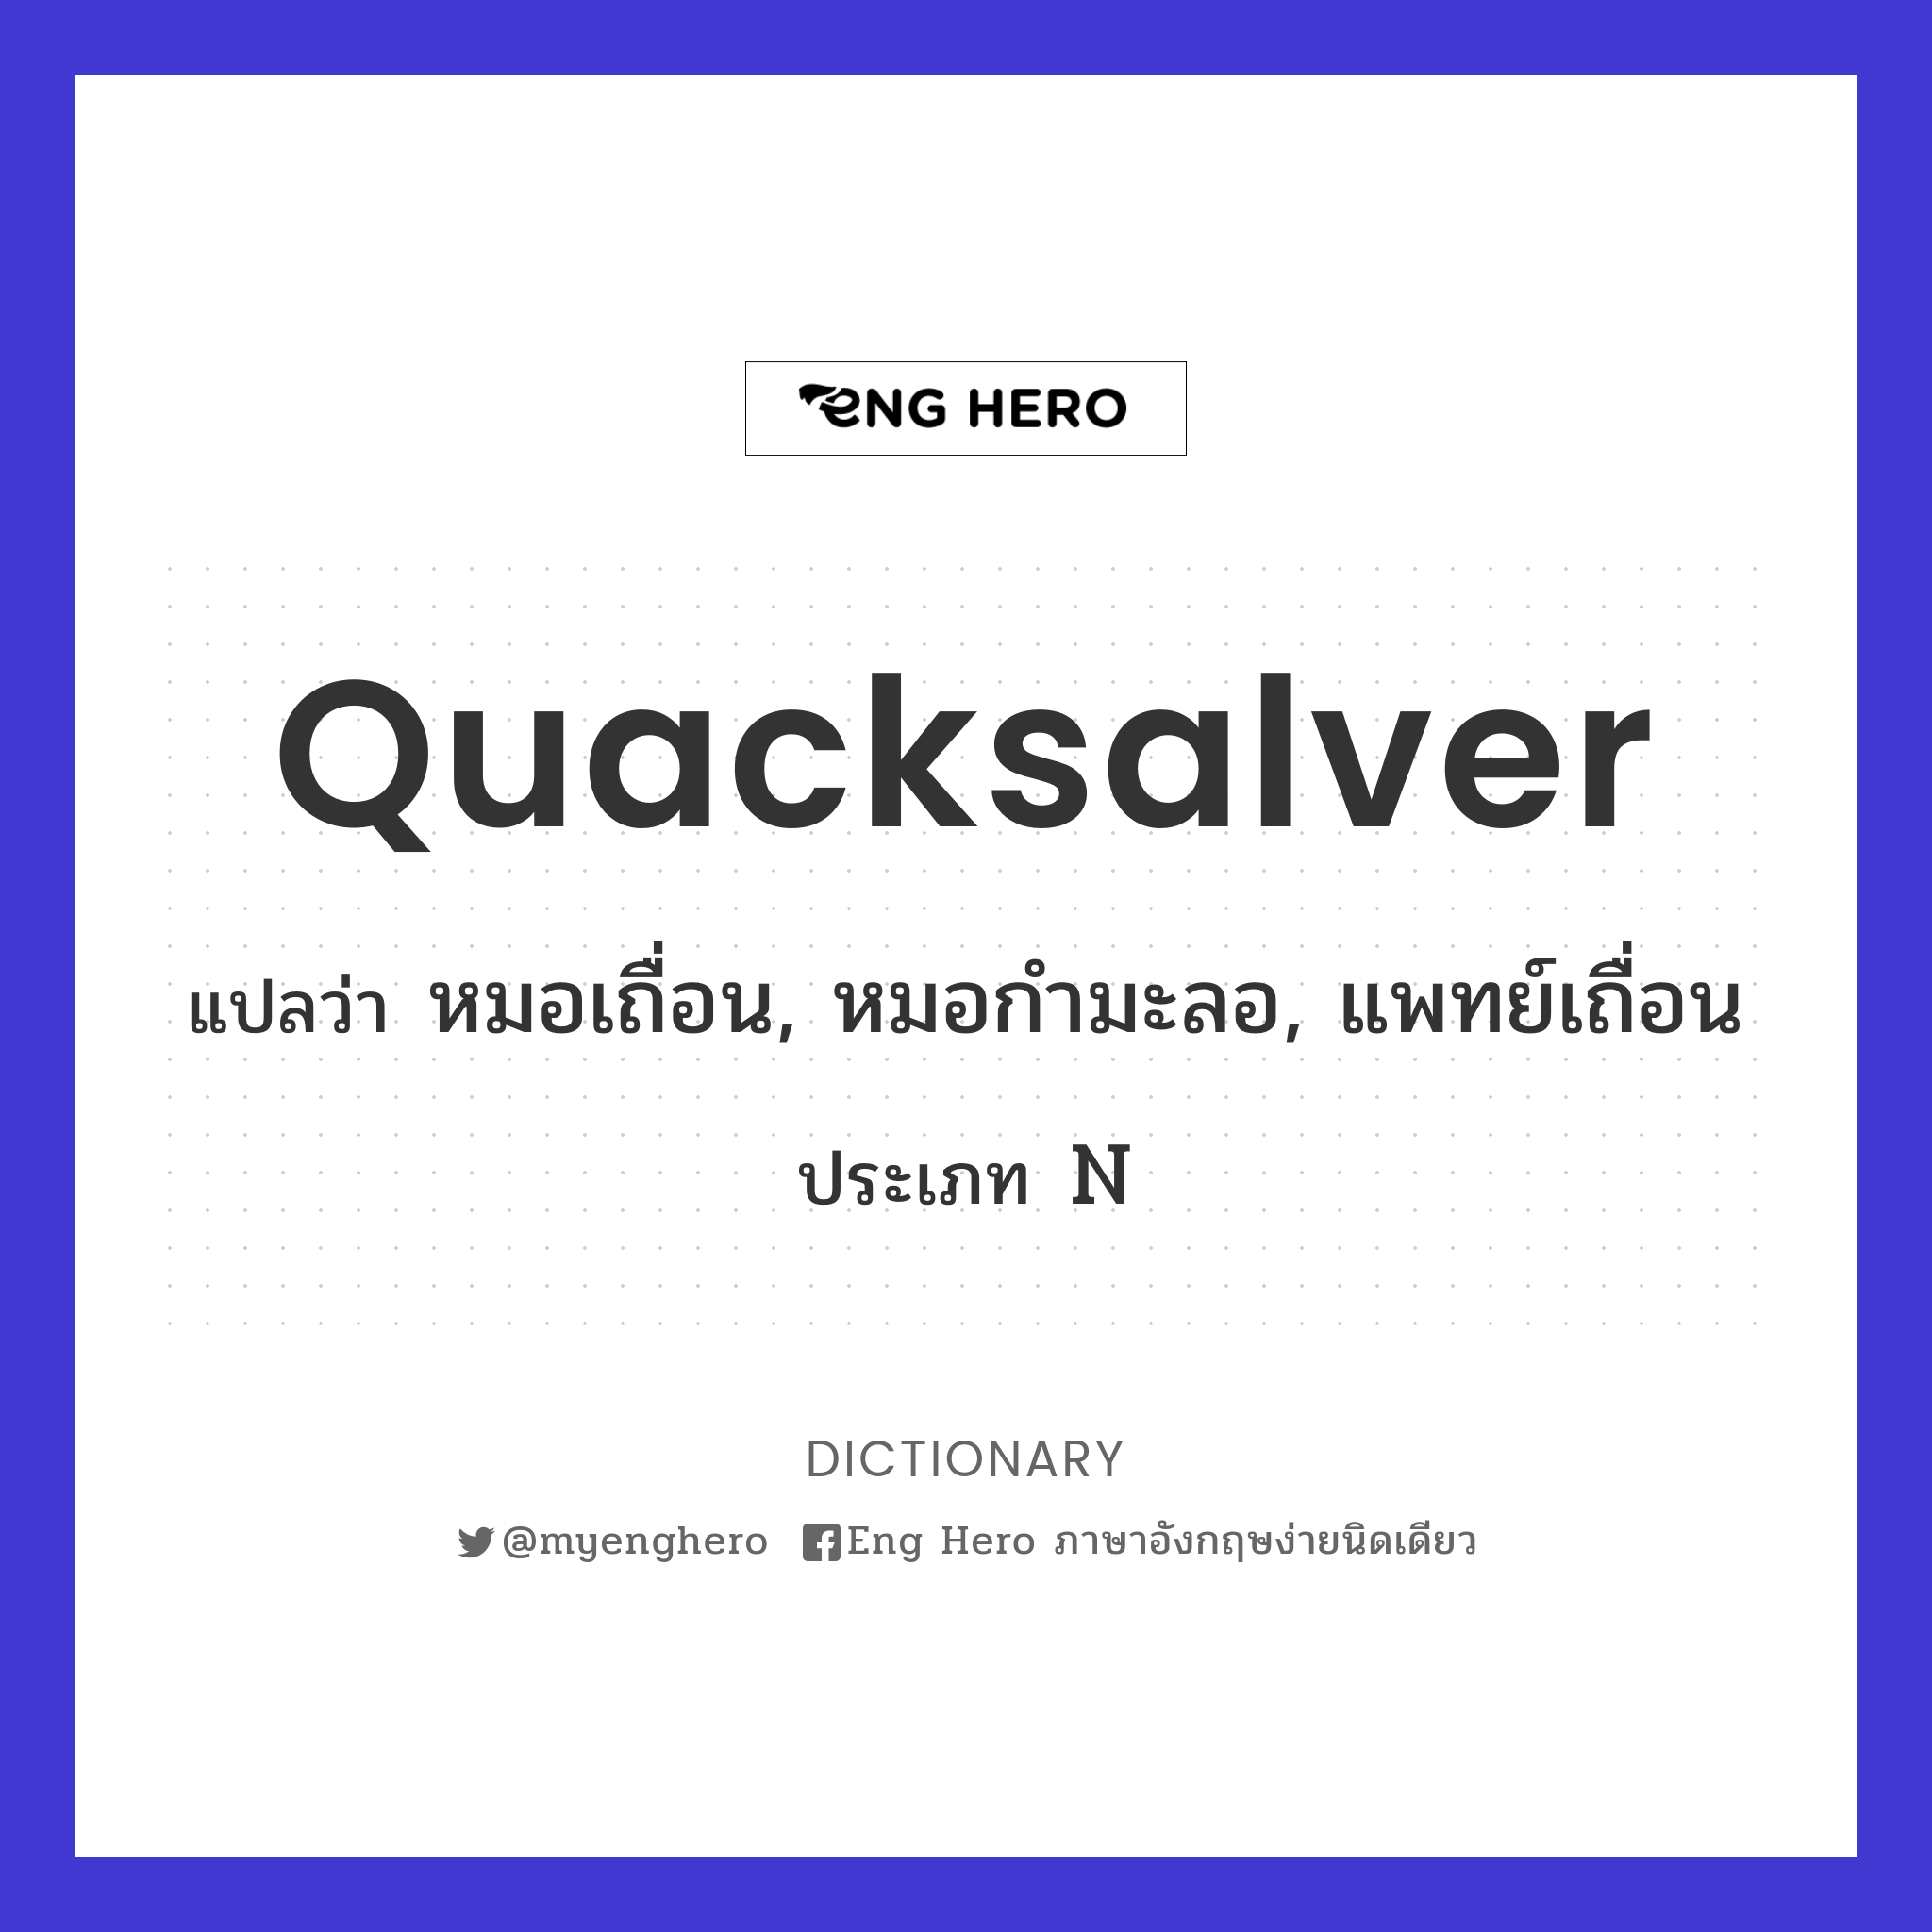 quacksalver